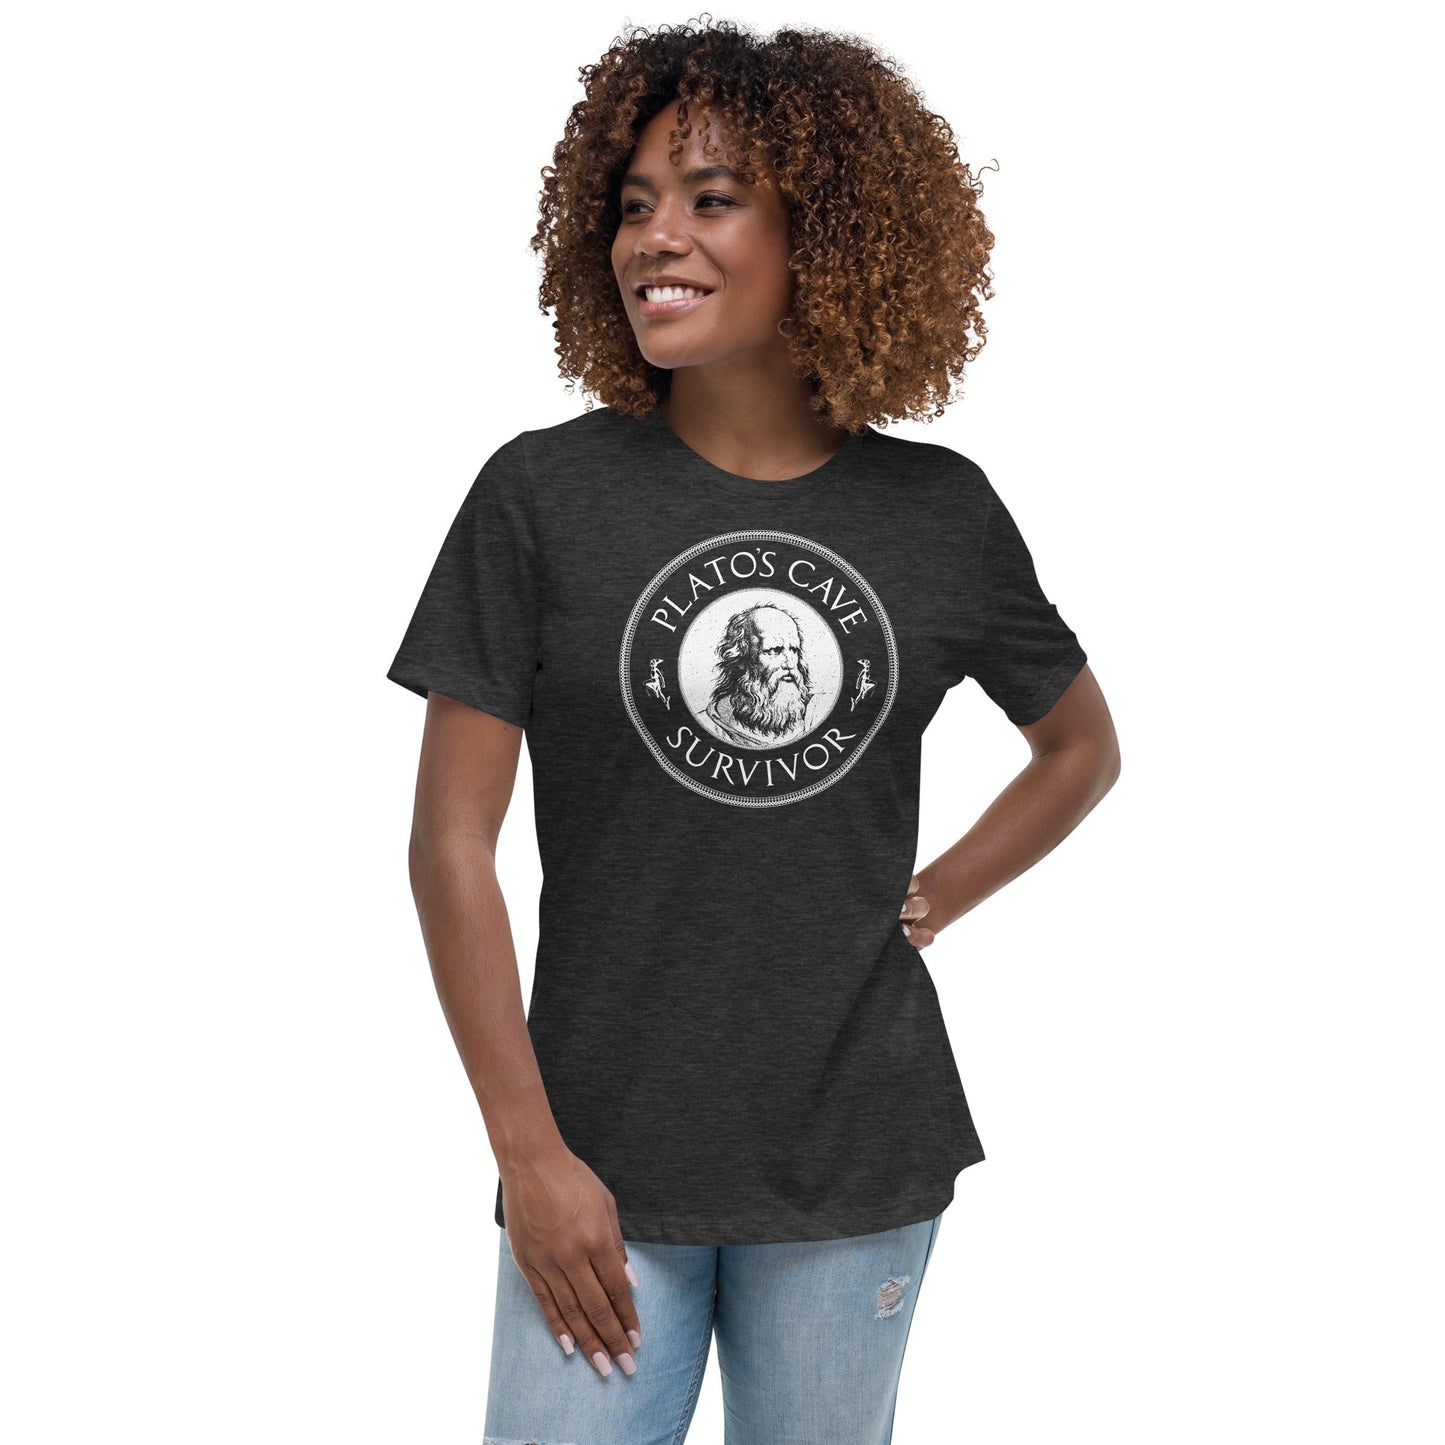 Plato's Cave Survivor - Women's T-Shirt